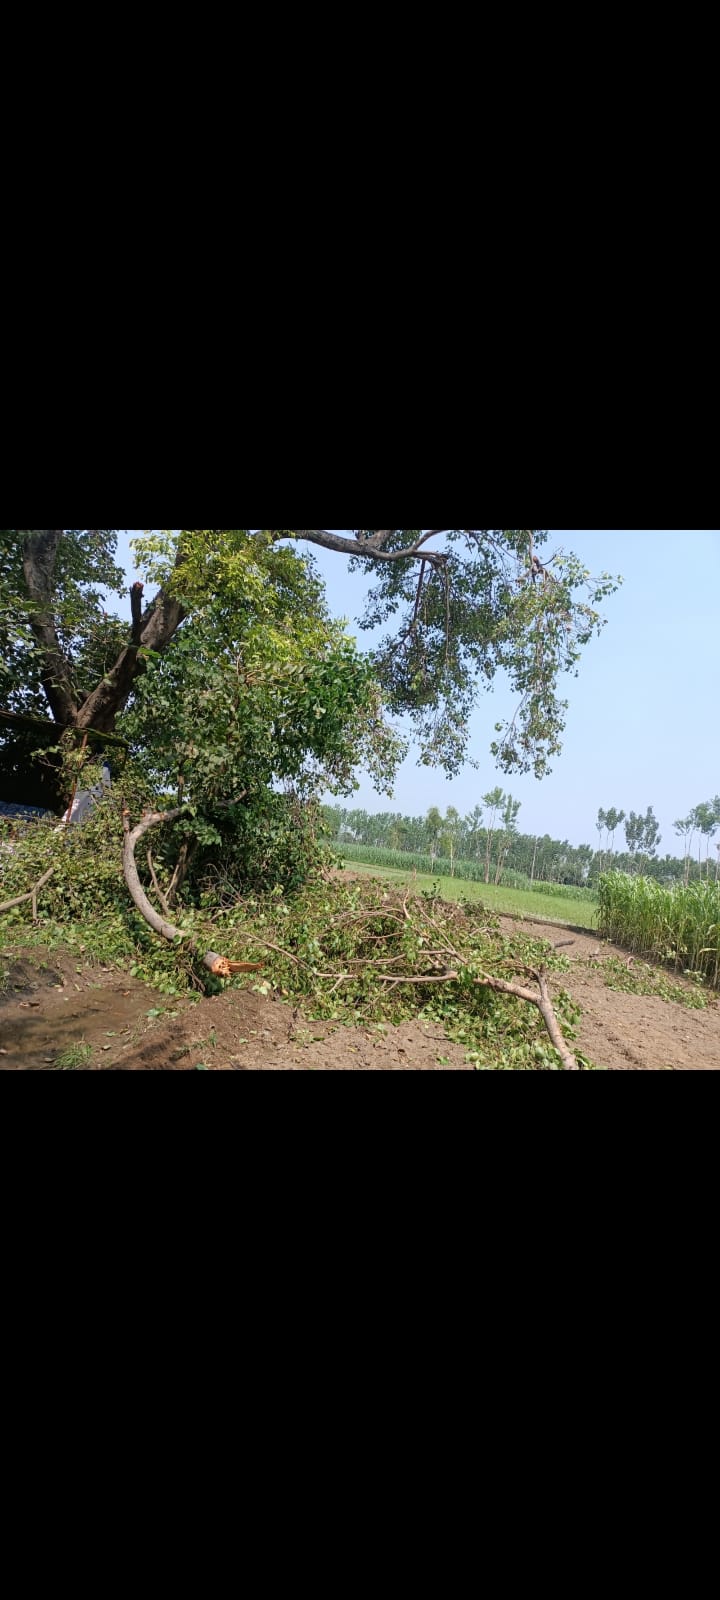 गांव टपरी मैं कुछ संप्रदाय के लोगों द्वारा पुराने पीपल के पेड़ को काट दिया गया गांव के लोगों में आक्रोश है